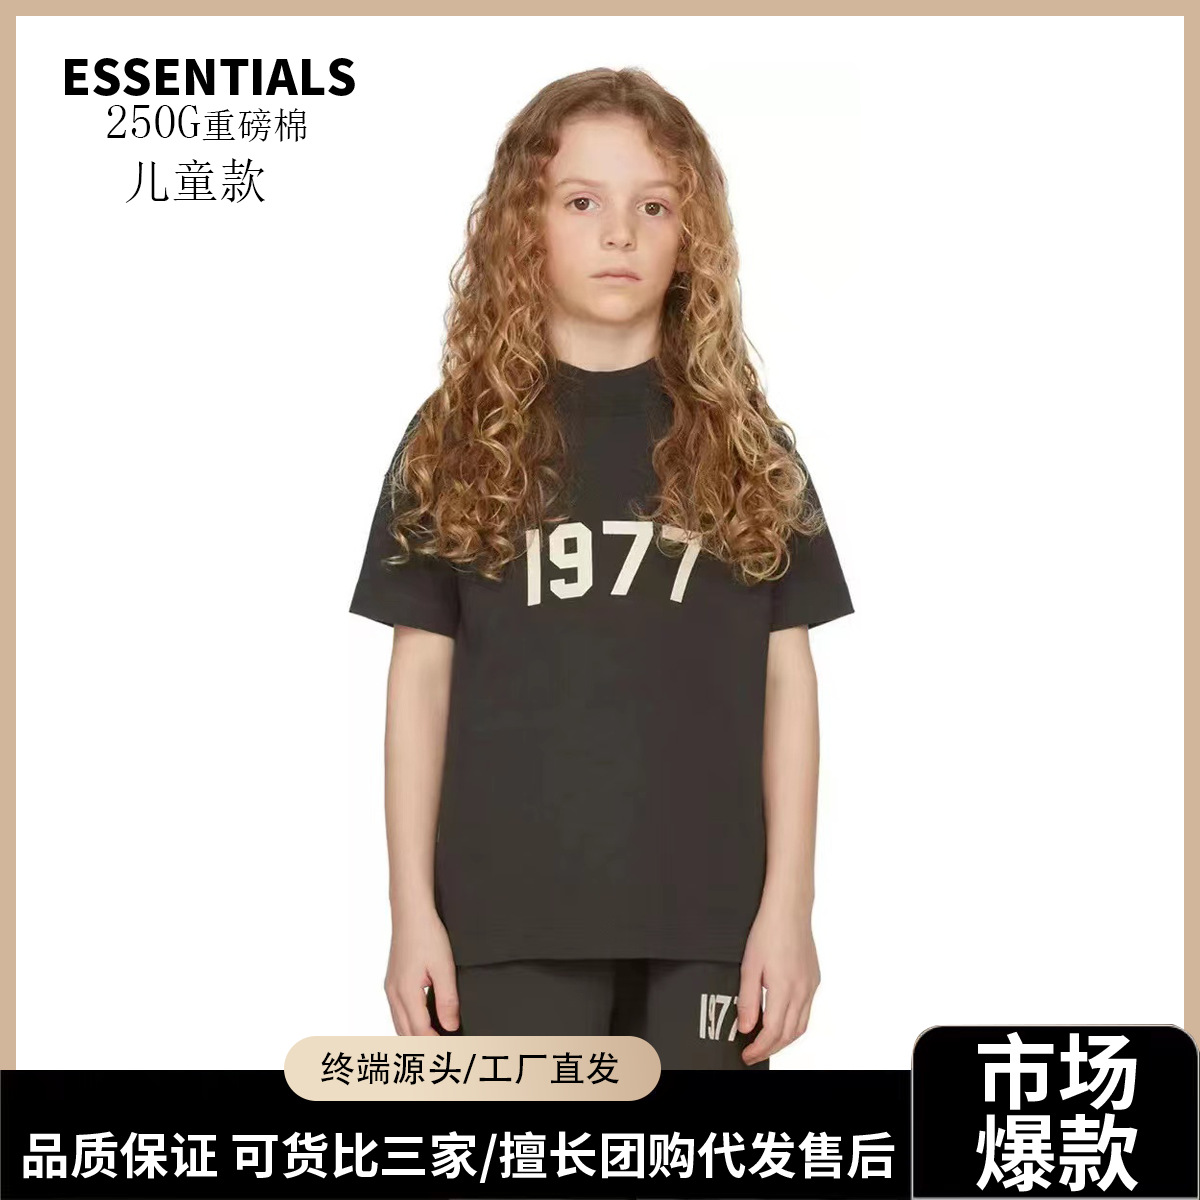 Essentials复线儿童FOG小众潮牌美式宽松纯棉短袖高街t恤批发